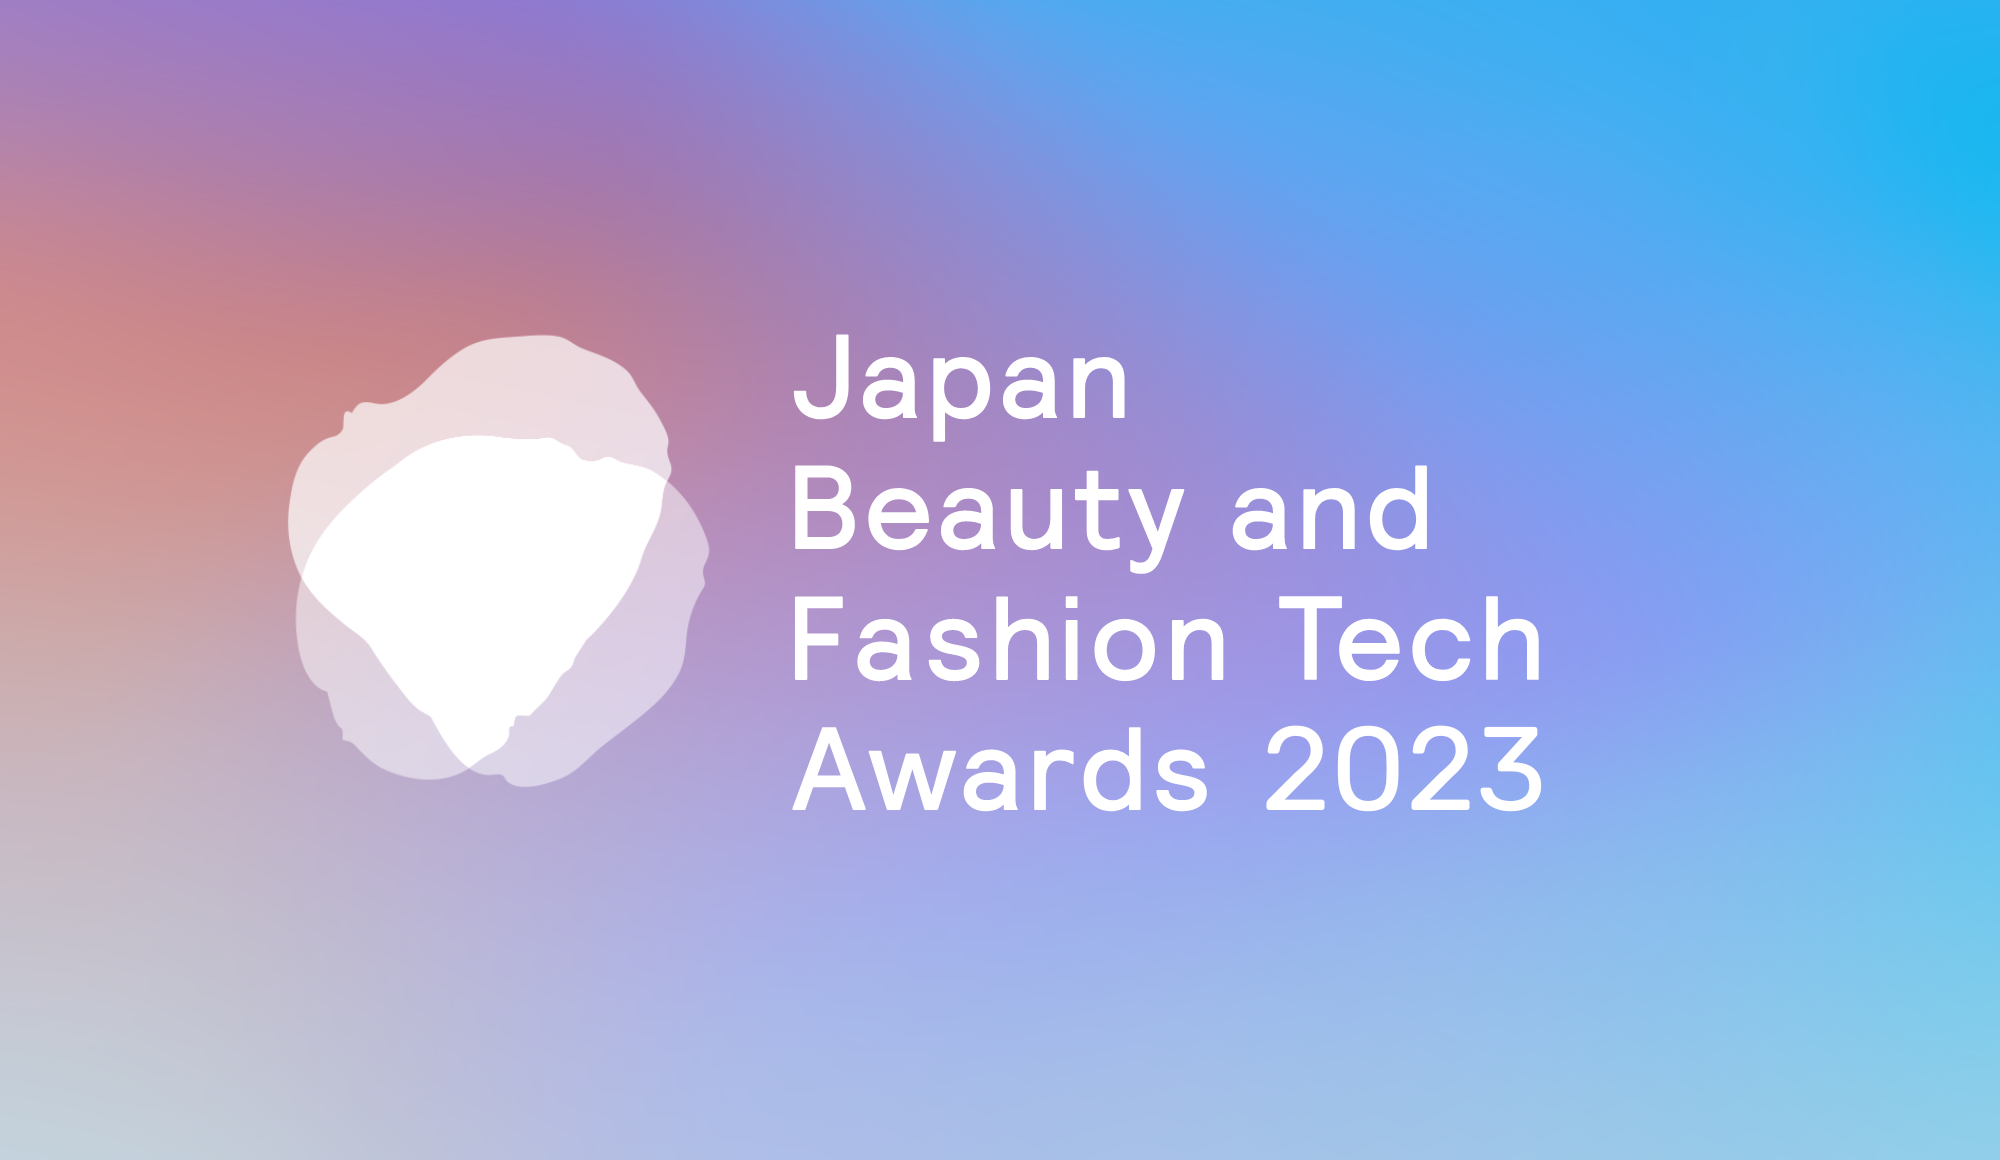 10月6日までエントリー受付中。「人を幸せにするイノベーション」を表彰するアイスタイル主催Japan Beauty and Fashion Tech Awards 2023 サムネイル画像